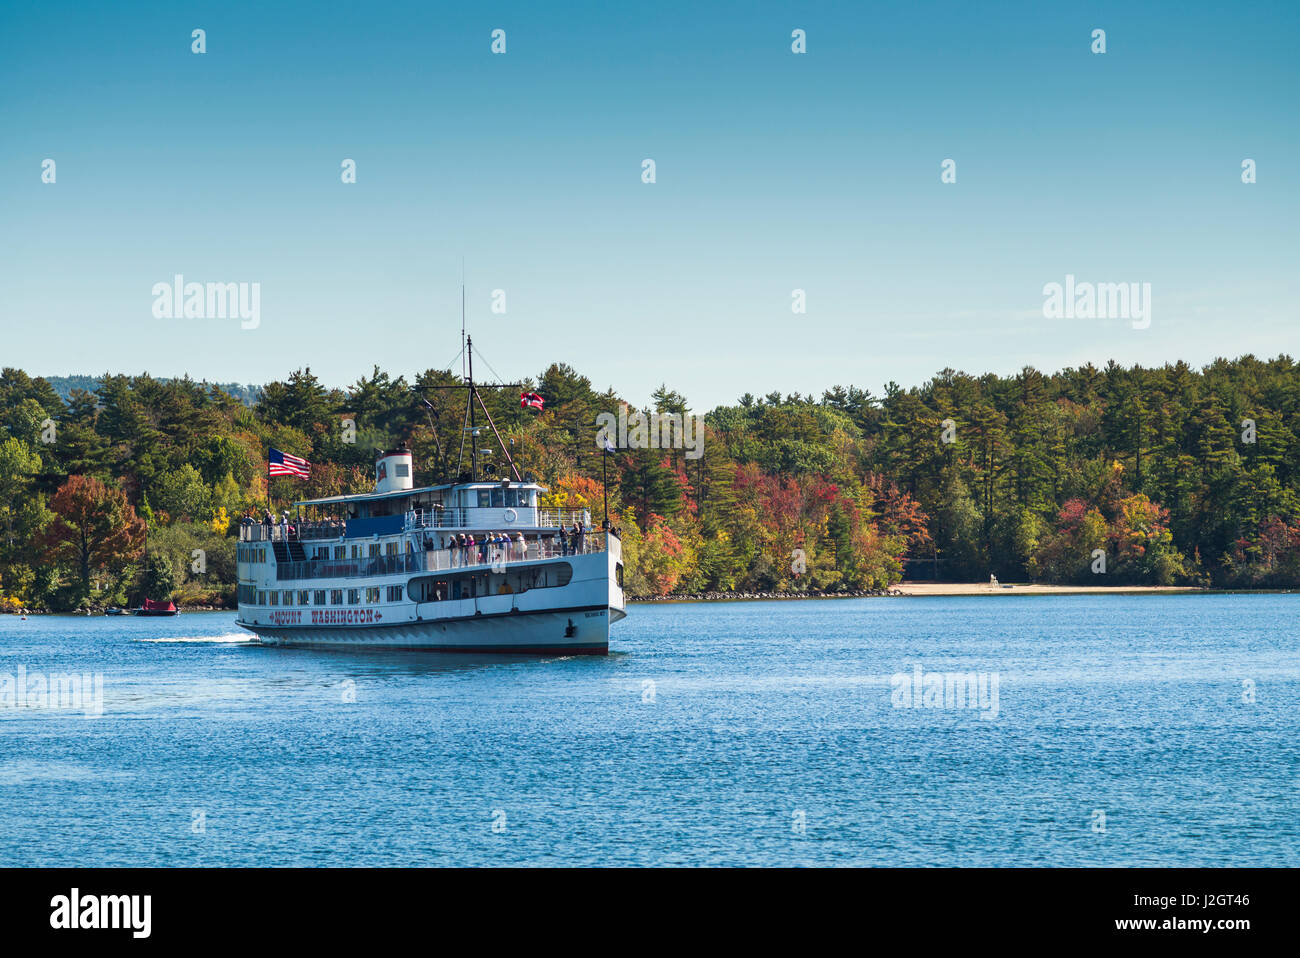 USA, New Hampshire, Lake Winnipesaukee, Wolfeboro, MS Mount Washington, steamship Stock Photo